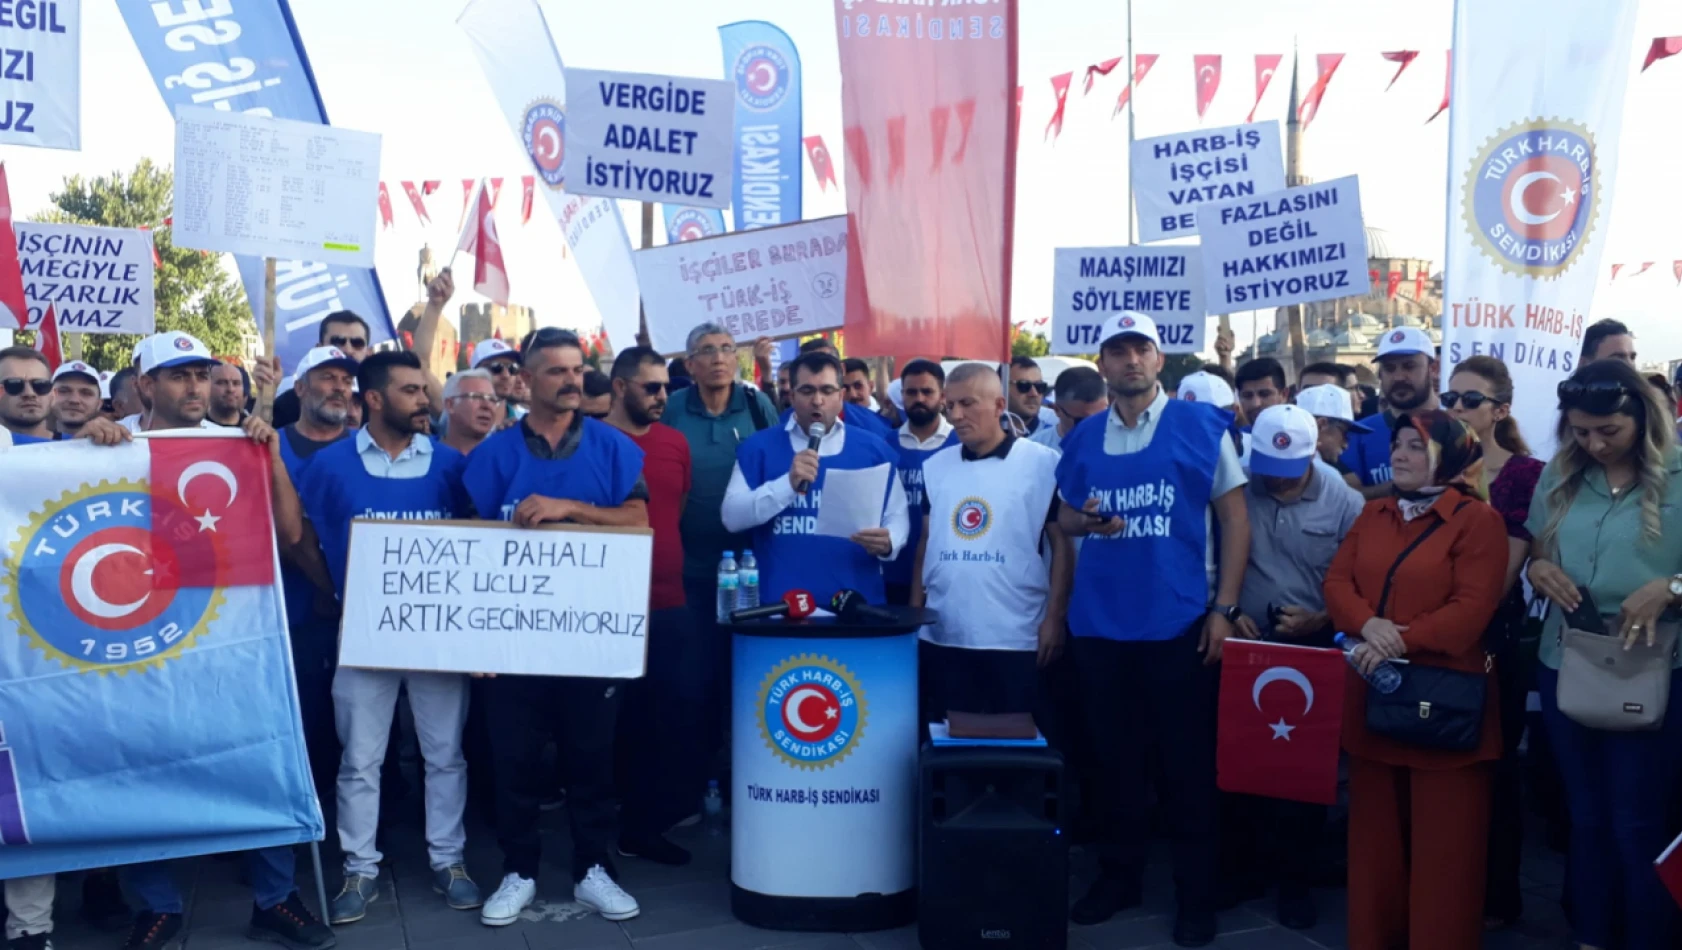 Türk Harb iş üyeleri eylem yaptı